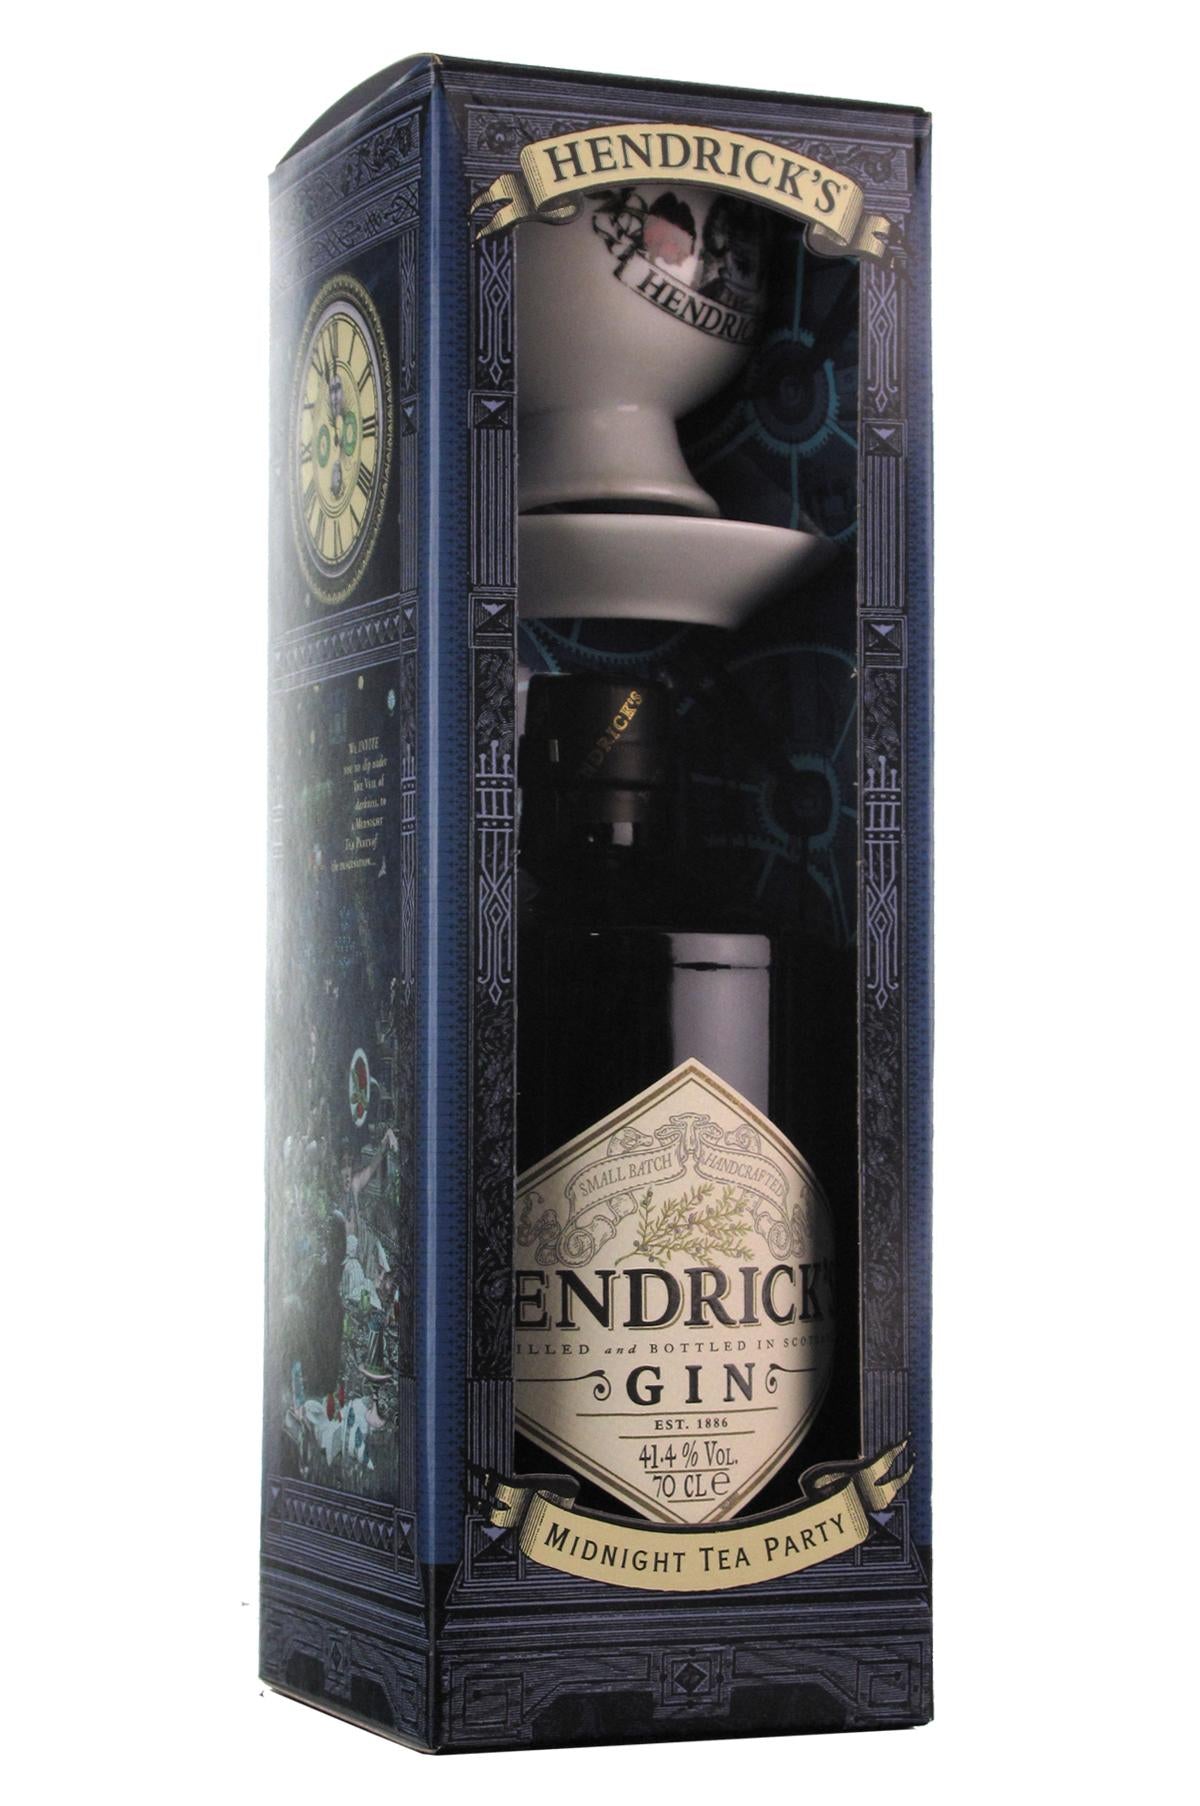 hendricks premium gin, midnight tea party